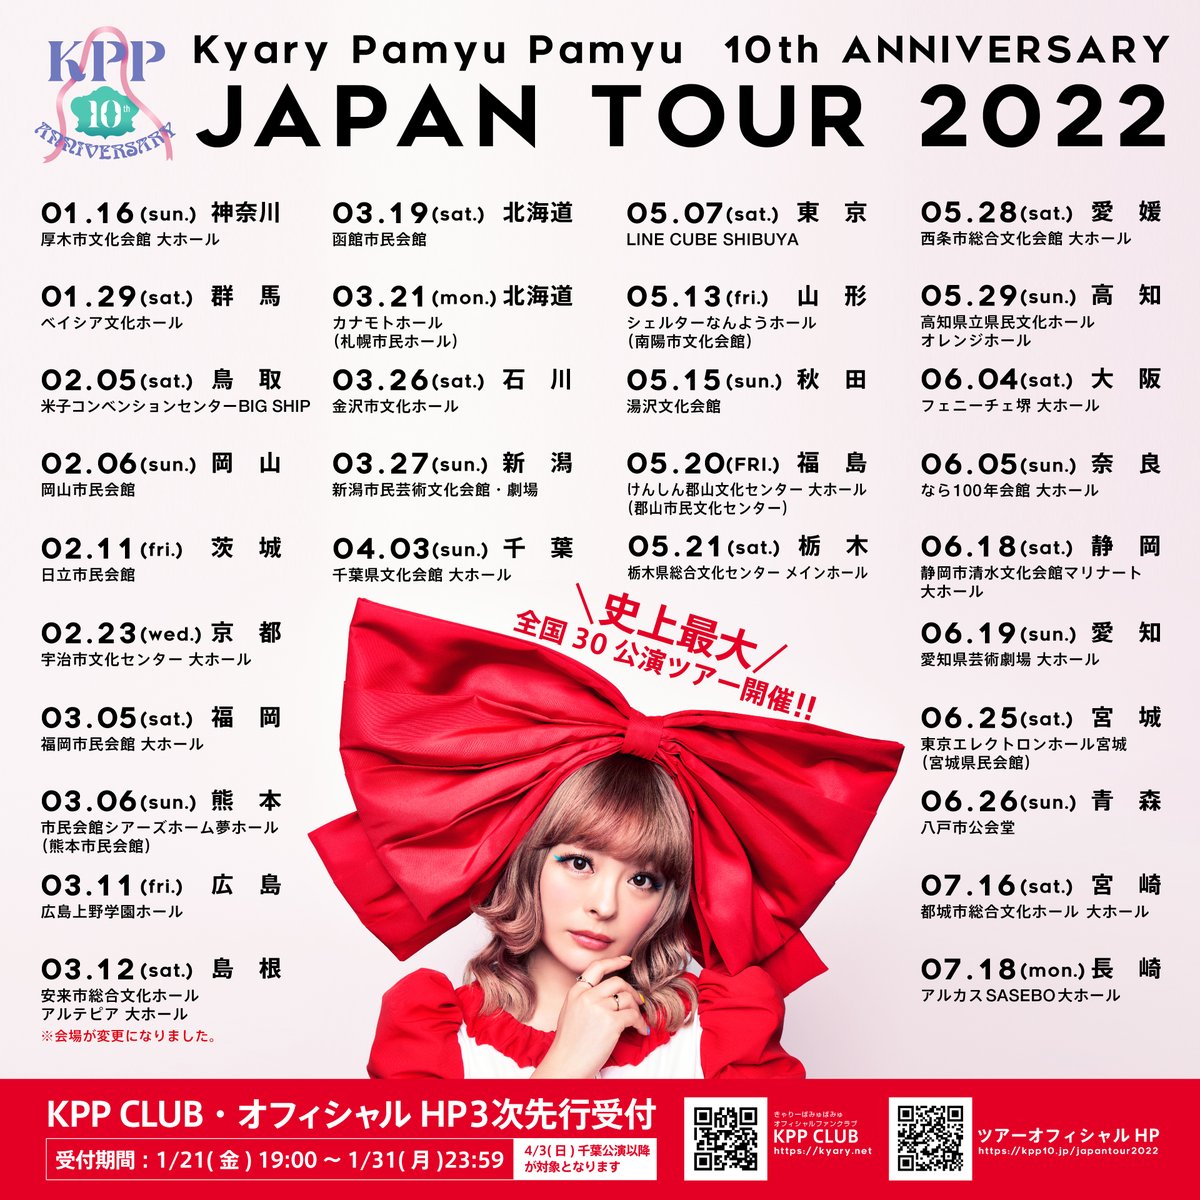 きゃりーぱみゅぱみゅ 10th ANNIVERSARY JAPAN TOUR 2022 CANDY WAVE（千葉県文化会館 大ホール）